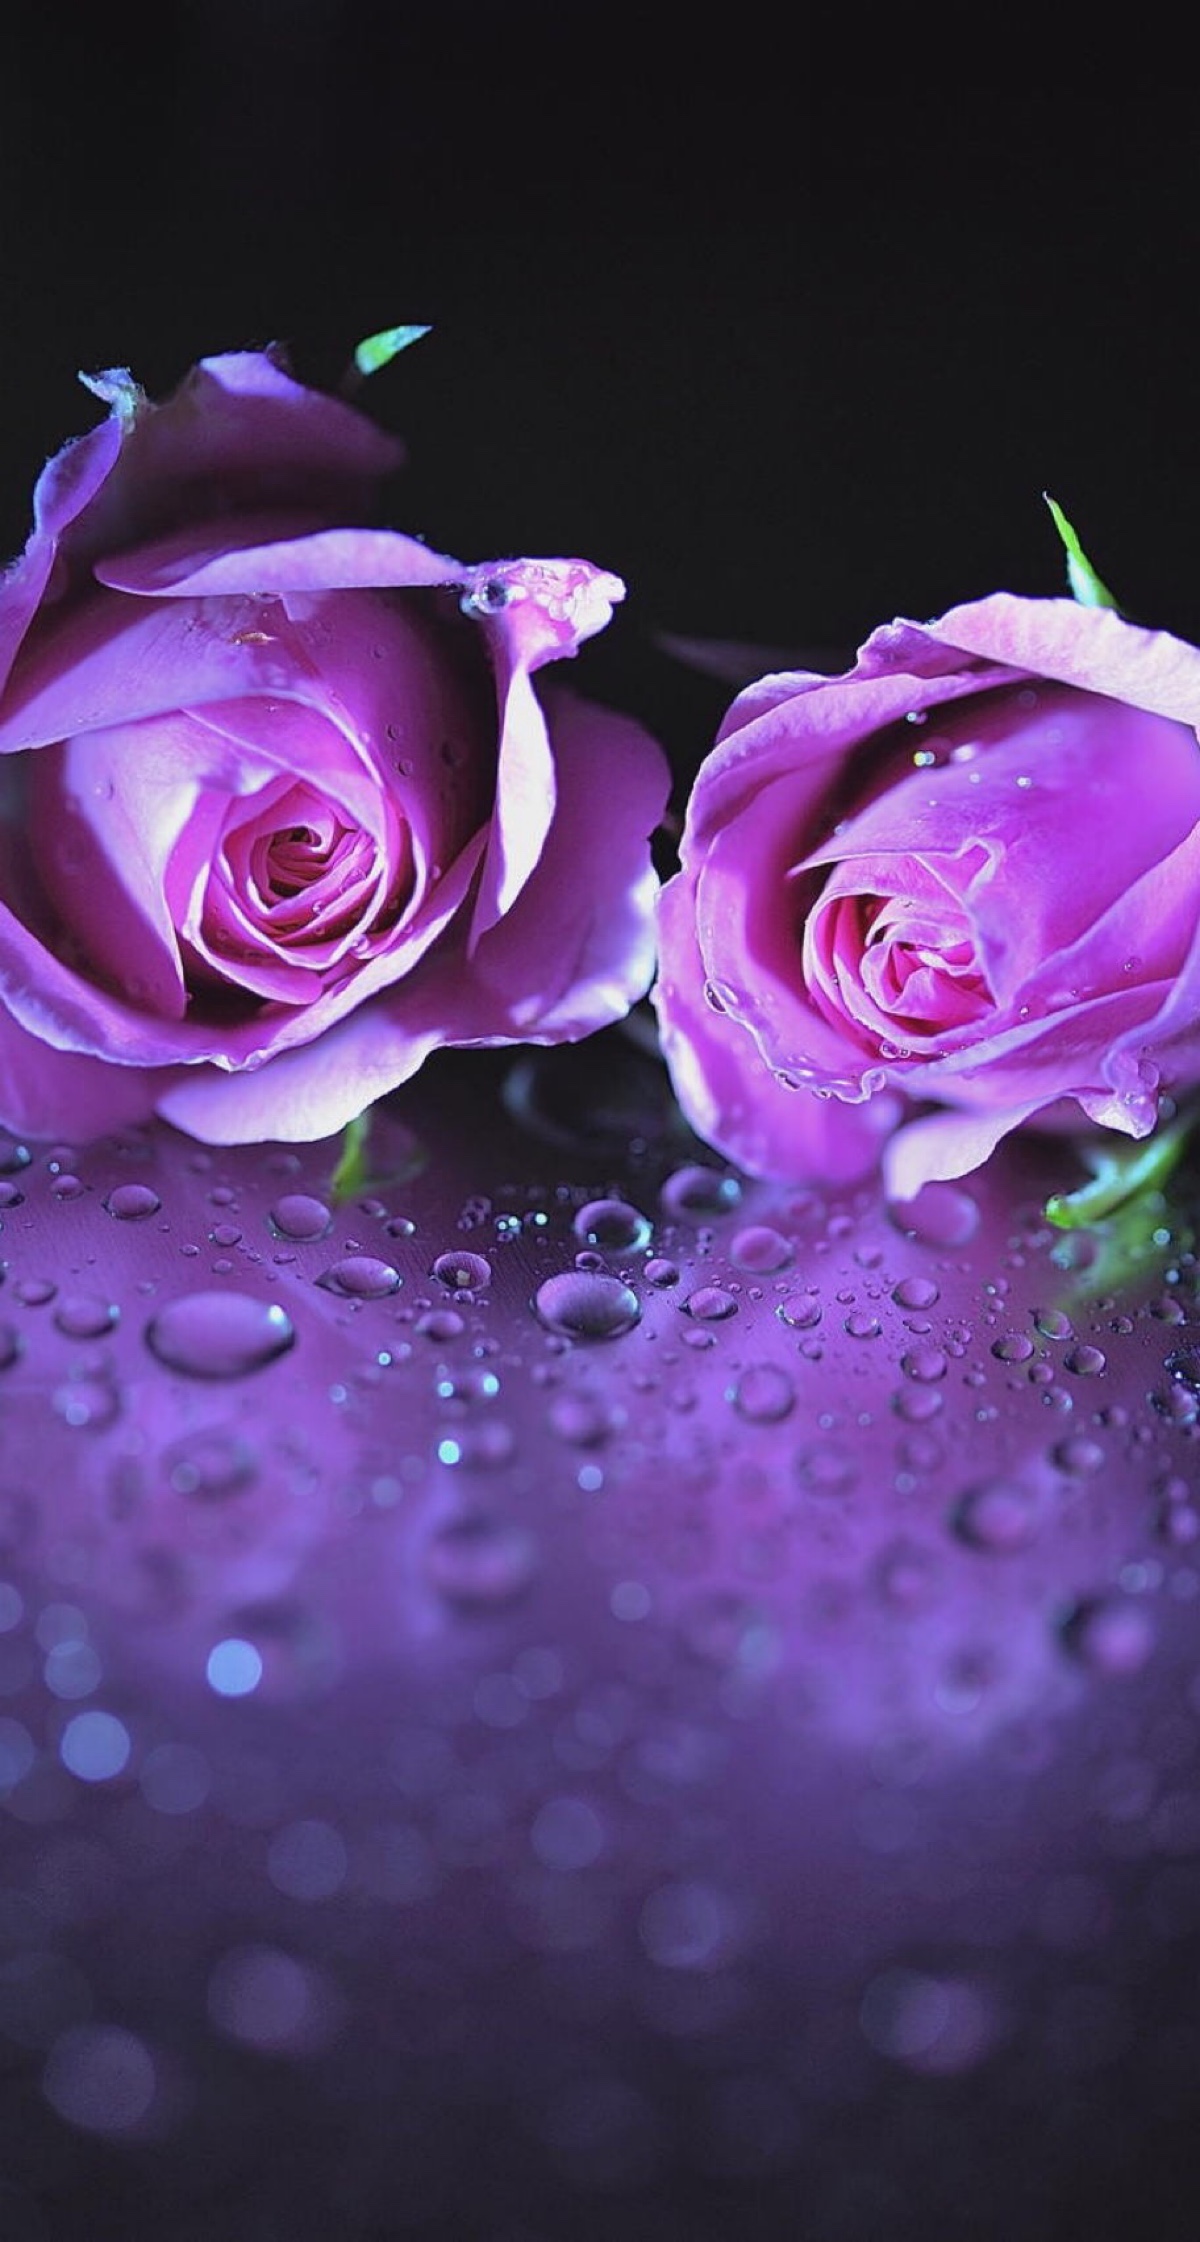 玫瑰 紫色 花 - Pixabay上的免费照片 - Pixabay